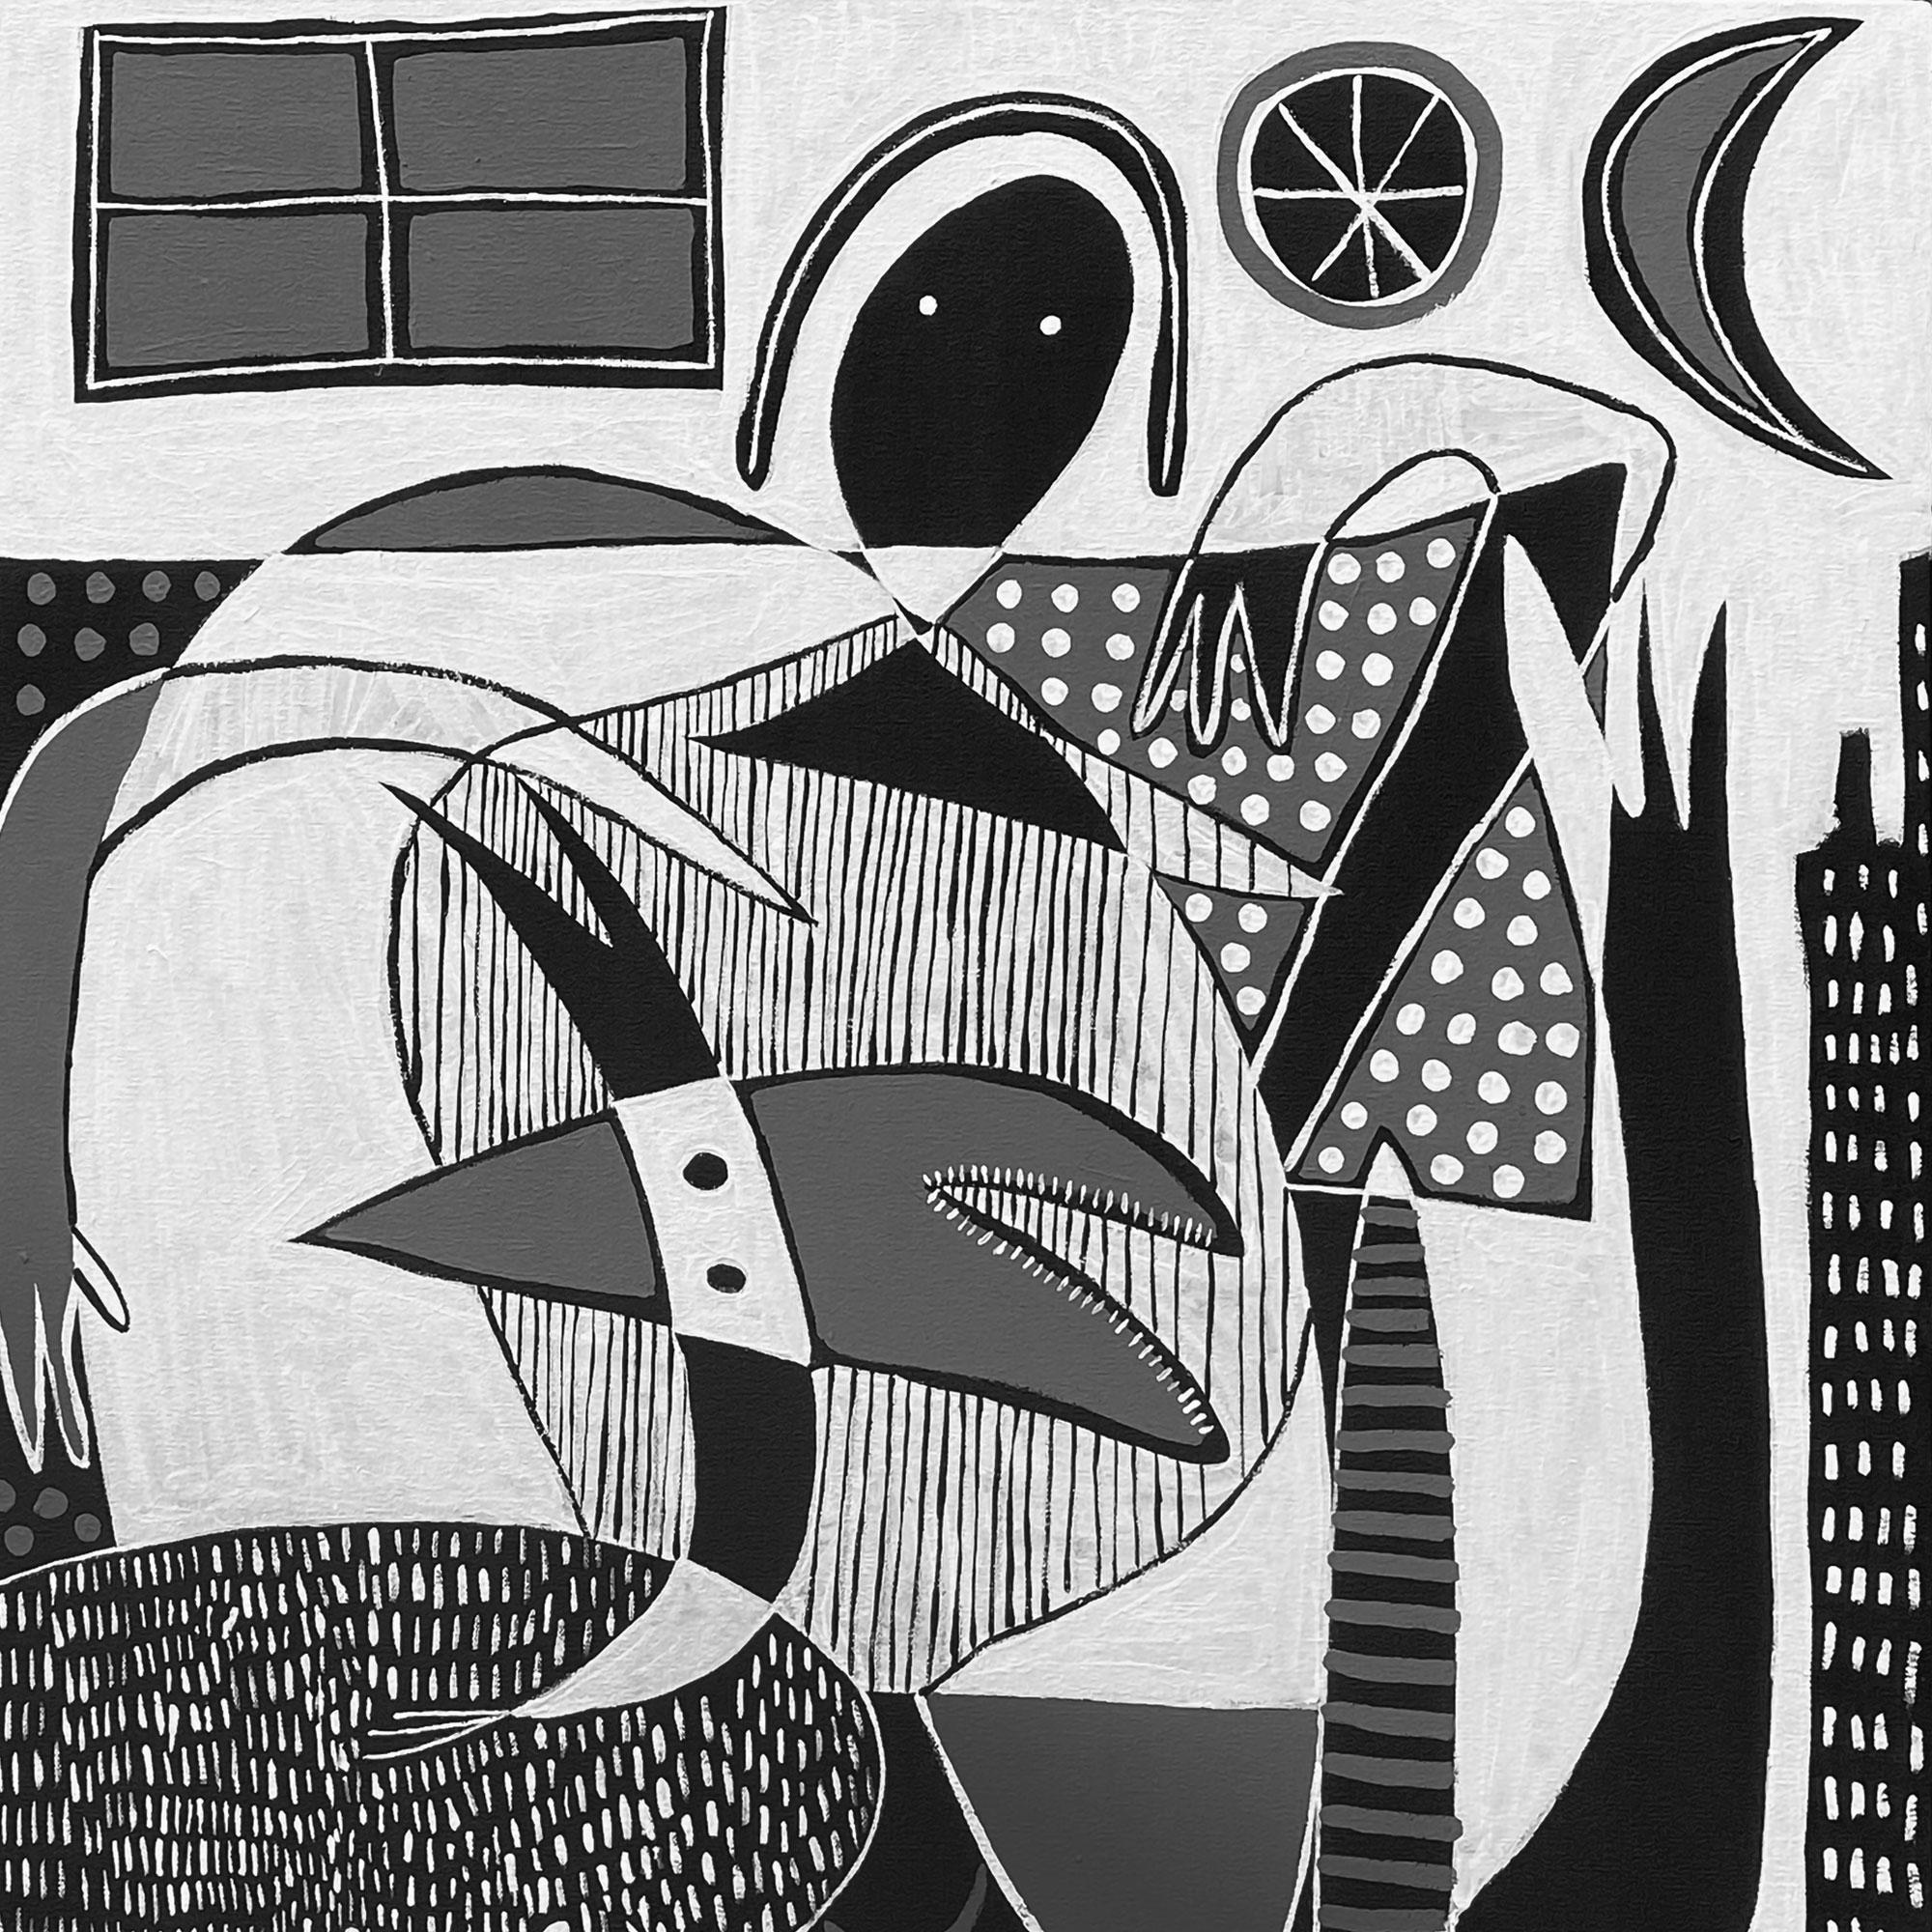 Art contemporain, peinture abstraite
Acrylique sur toile
110x150cm
Signé 



A propos de l'artiste
Enrique Pichardo (Mexico, 1973) est diplômé de l'Escuela Nacional de Pintura, Escultura y Grabado (ENPEG) 